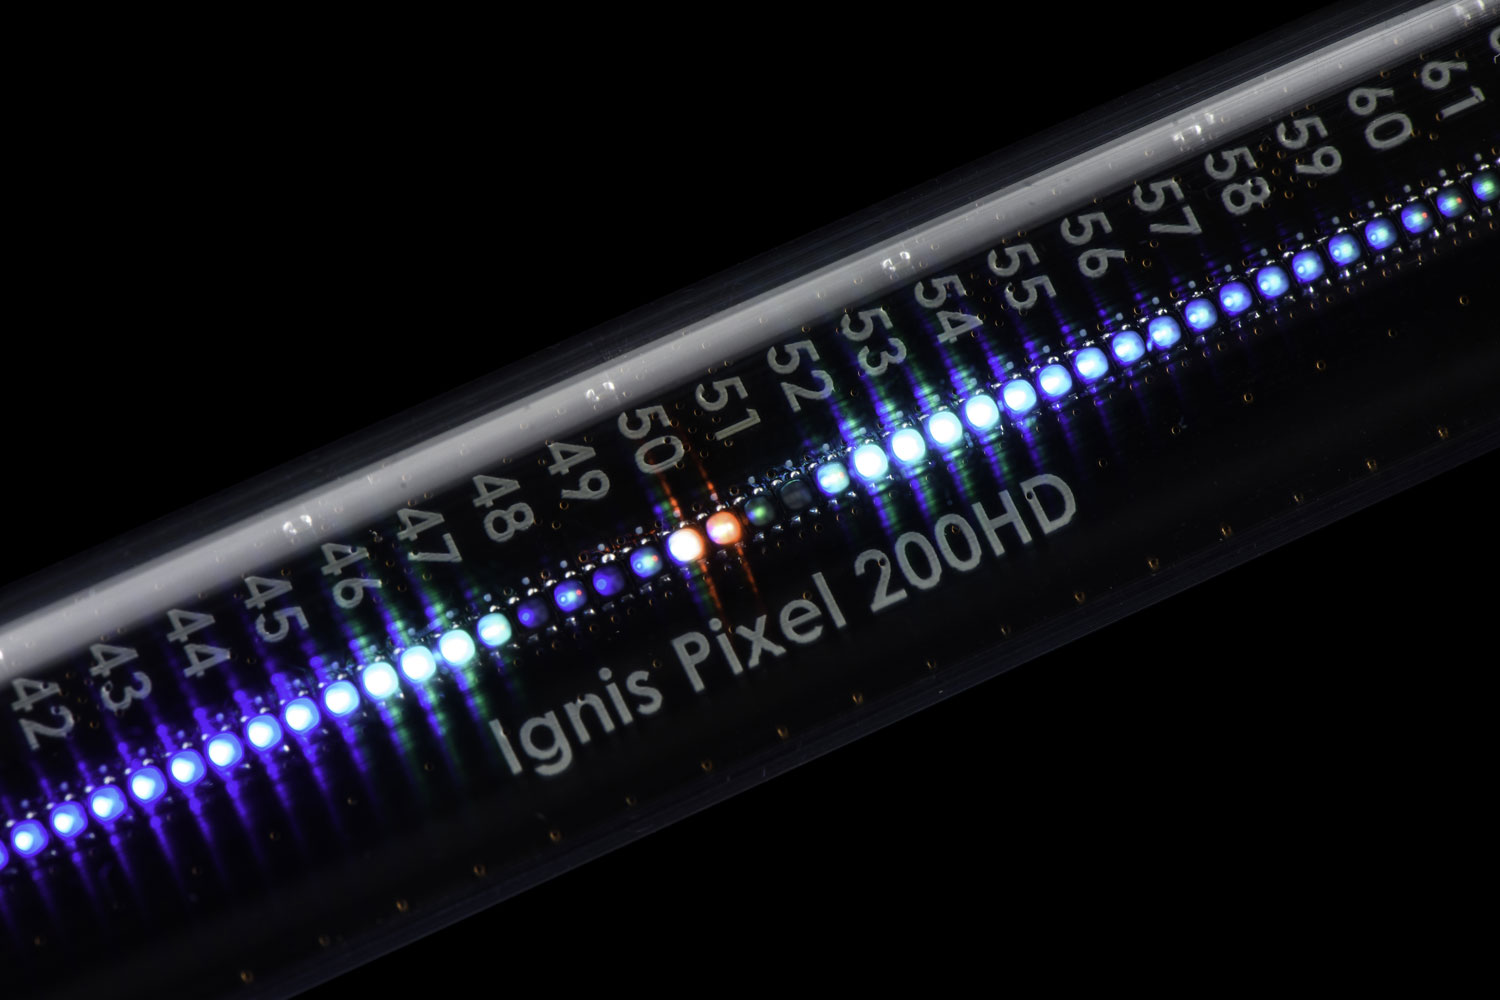 Paire de bolas lumineux en forme de goutte d'eau - Multi Fonction LED ·  PassePasse